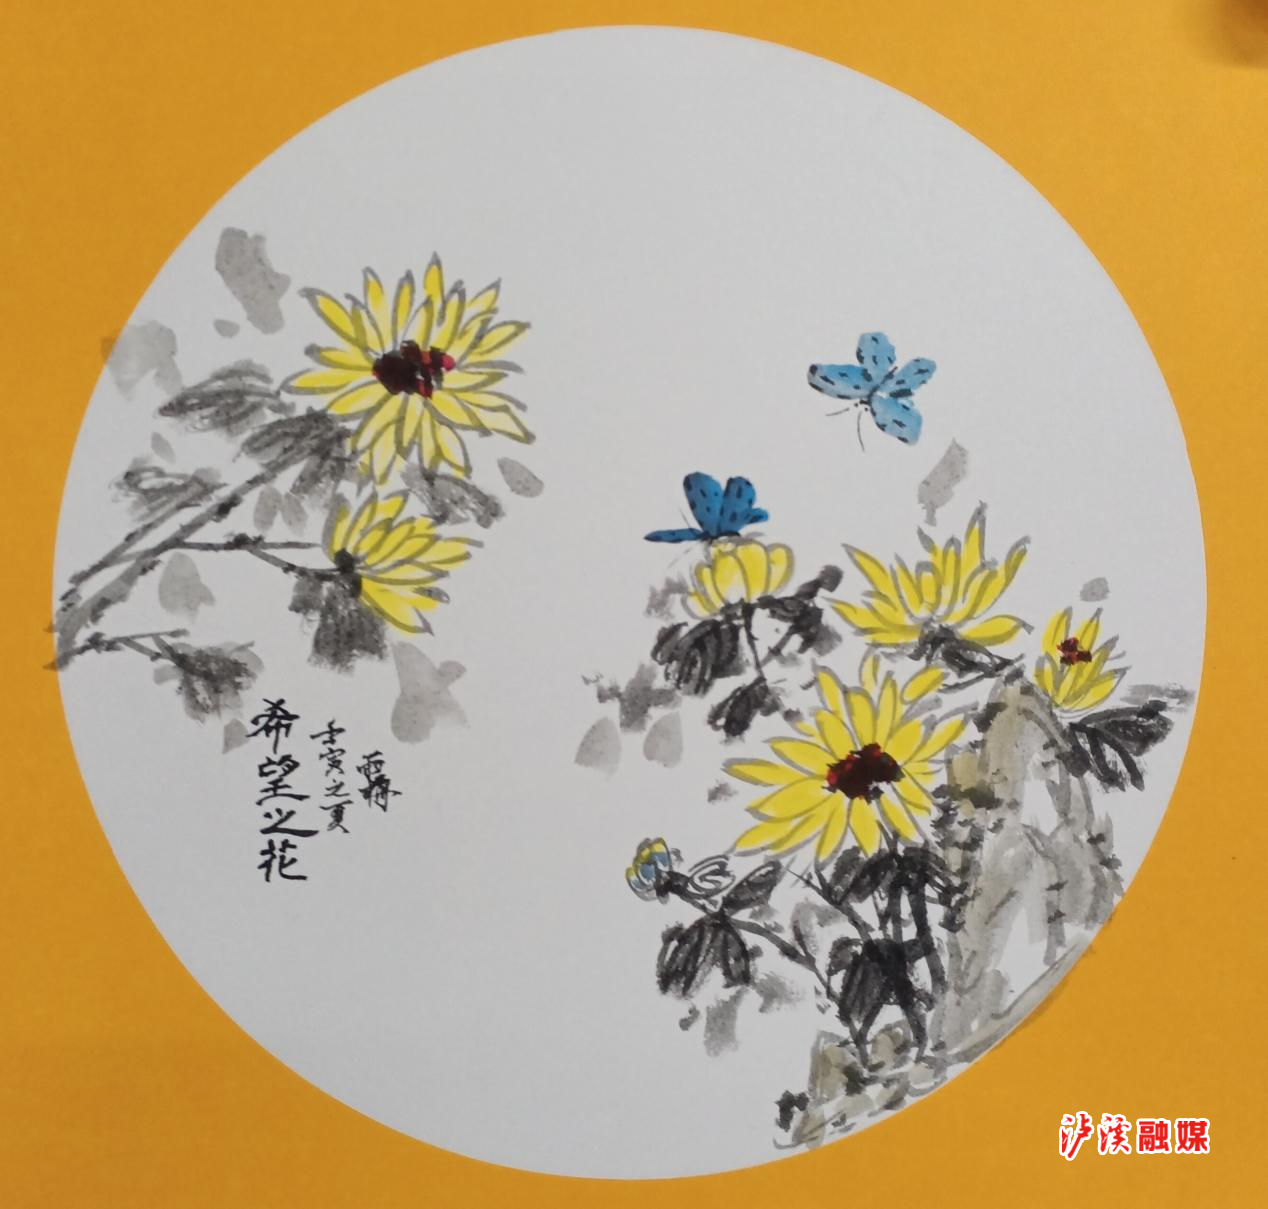 国画 《希望之花》 作者：向雨梅
向雨梅，泸溪县临风堂培训学校创始人，擅长写意花鸟画，最善画梅。